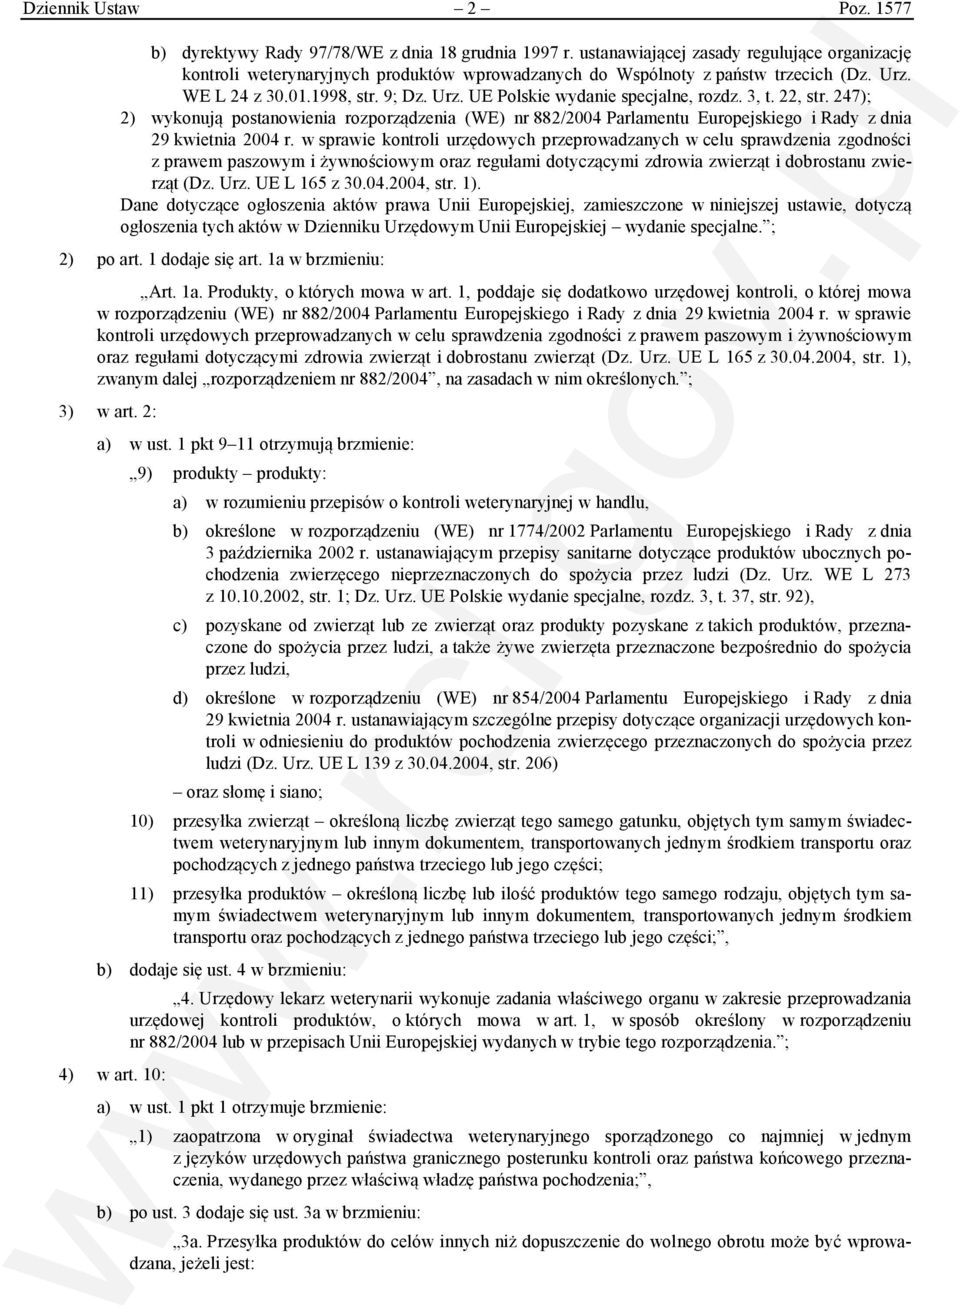 3, t. 22, str. 247); 2) wykonują postanowienia rozporządzenia (WE) nr 882/2004 Parlamentu Europejskiego i Rady z dnia 29 kwietnia 2004 r.